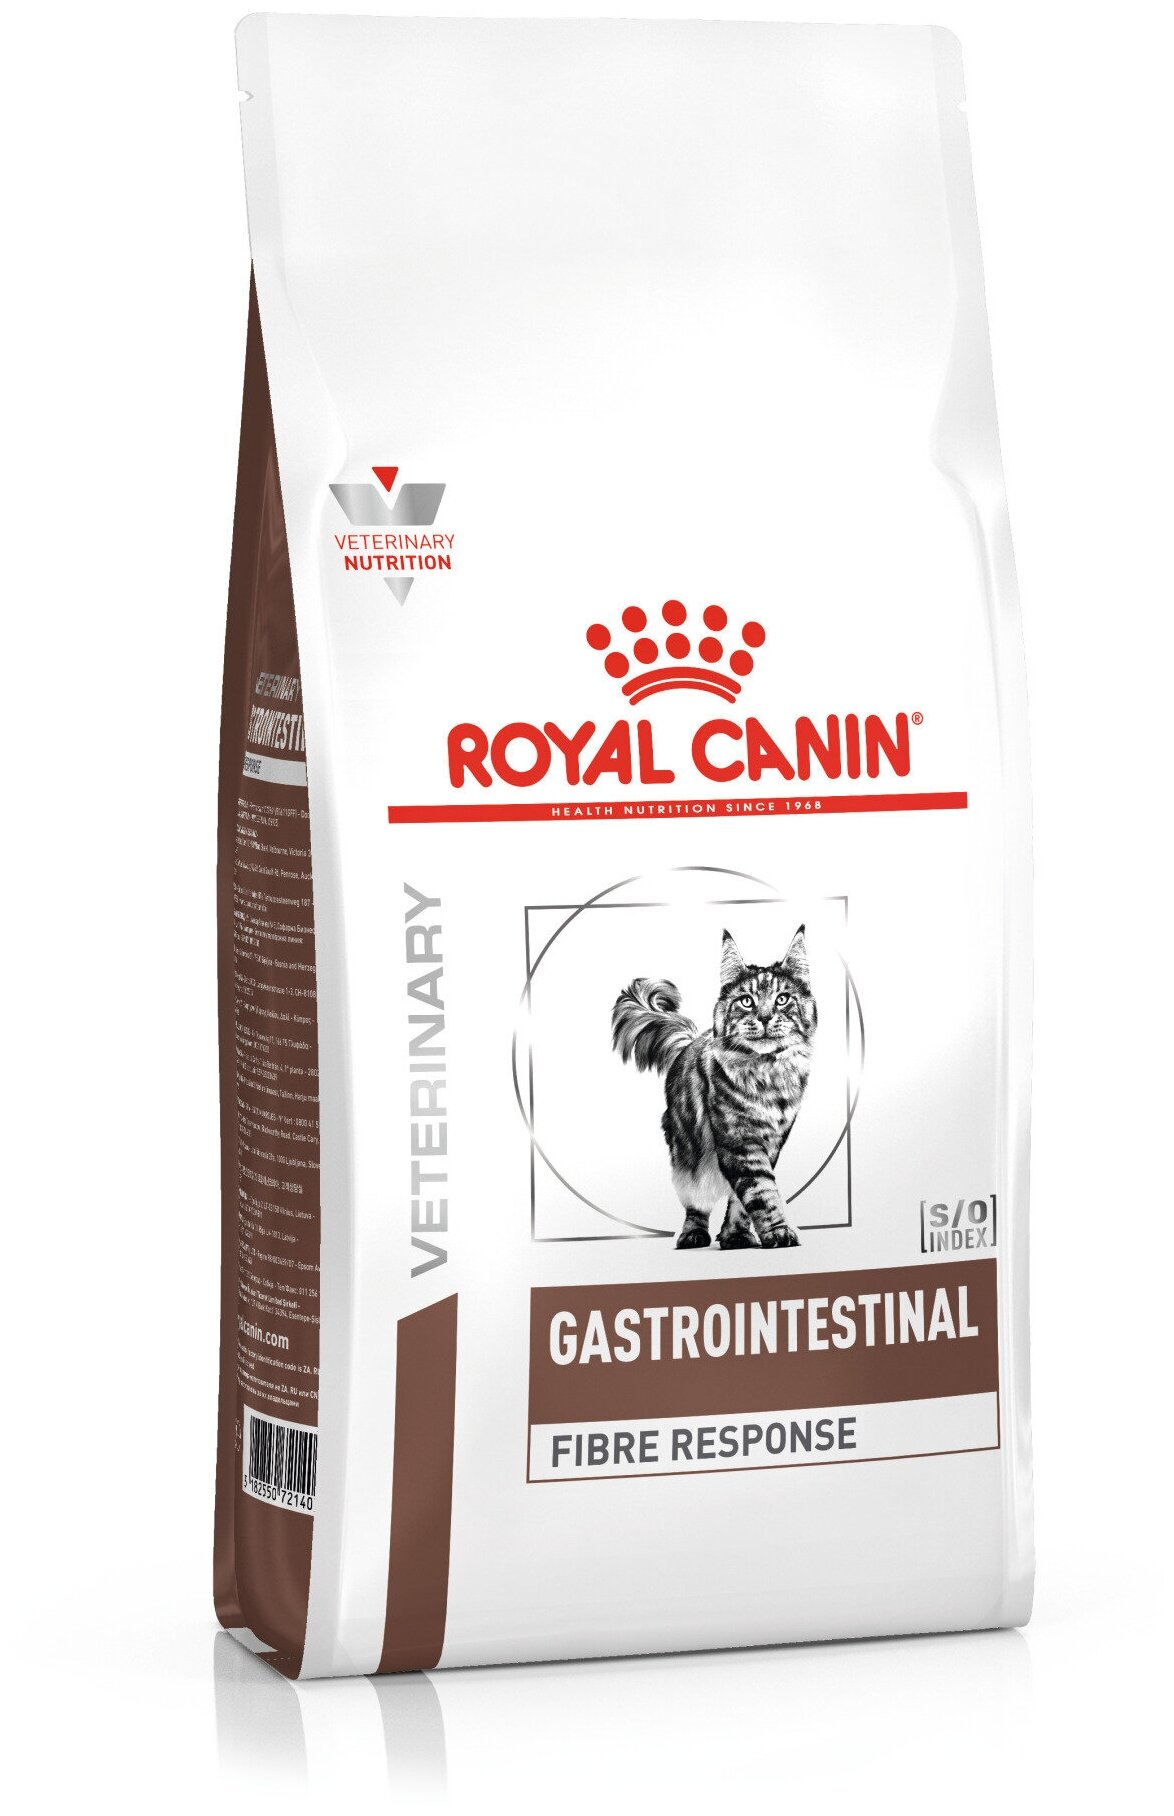 ROYAL CANIN VD GASTRO INTESTINAL FIBRE RESPONSE FR31 400 г ветеринарная диета для кошек при острых и хронических запорах 3шт